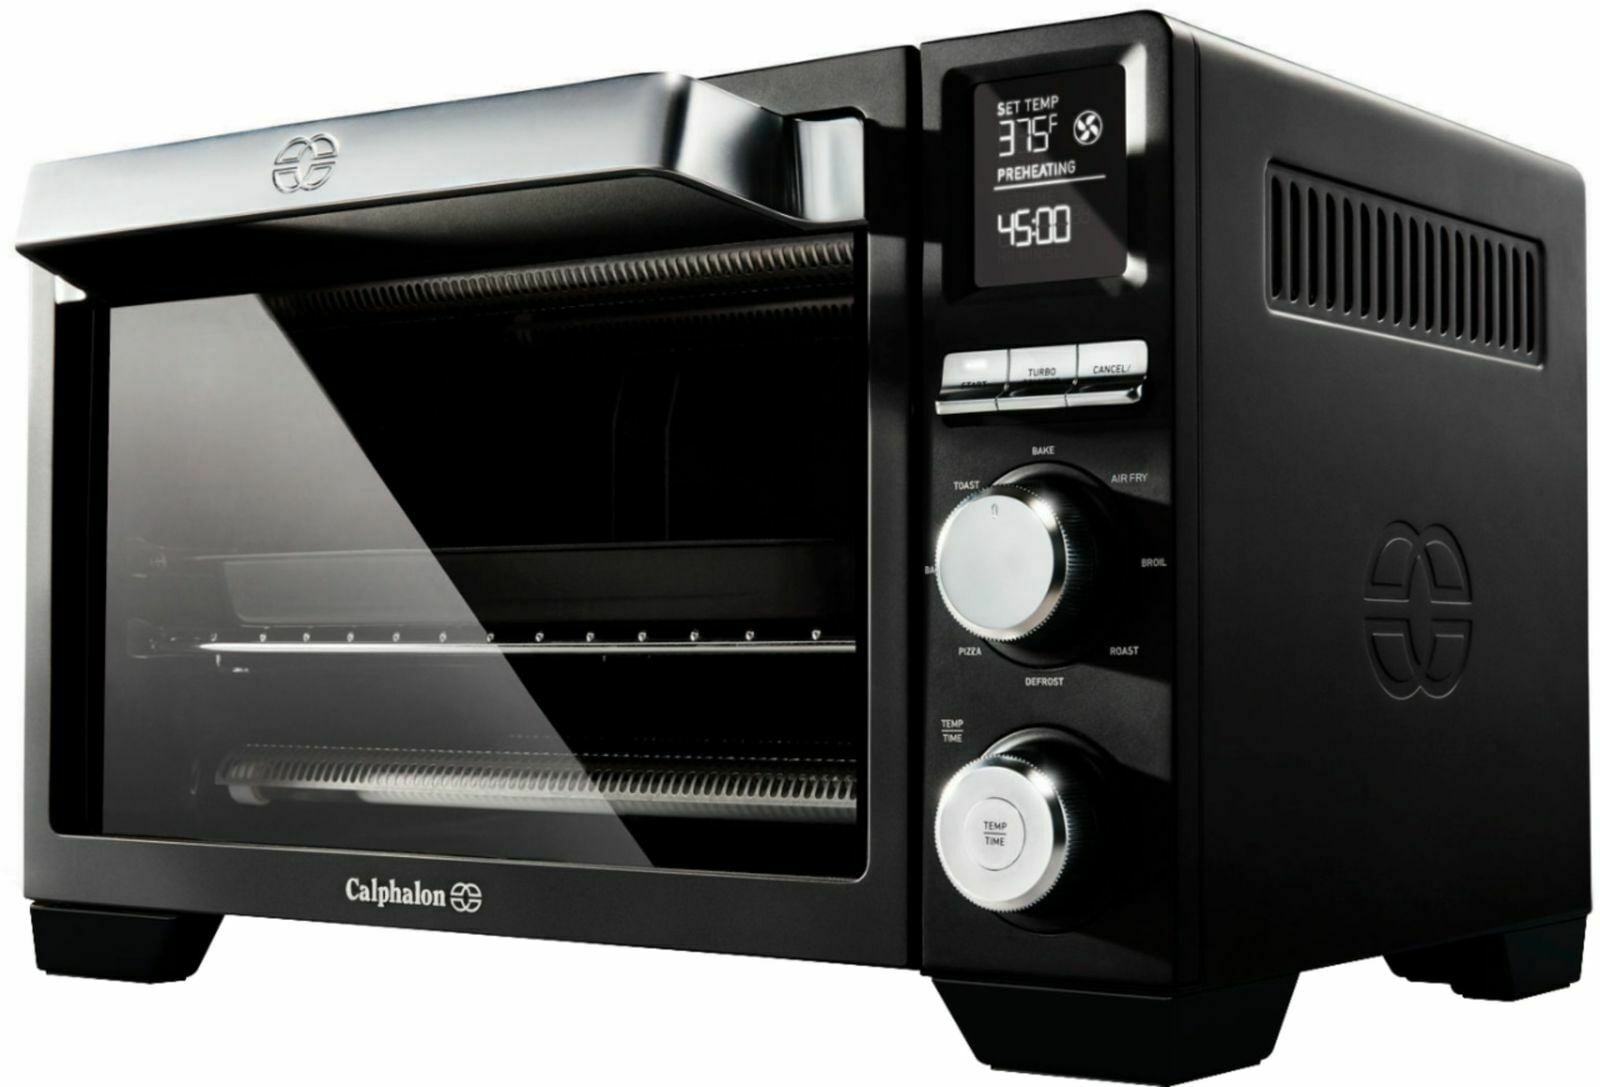 Calphalon Dual Cook Air Fry Countertop Oven costco｜TikTok Search